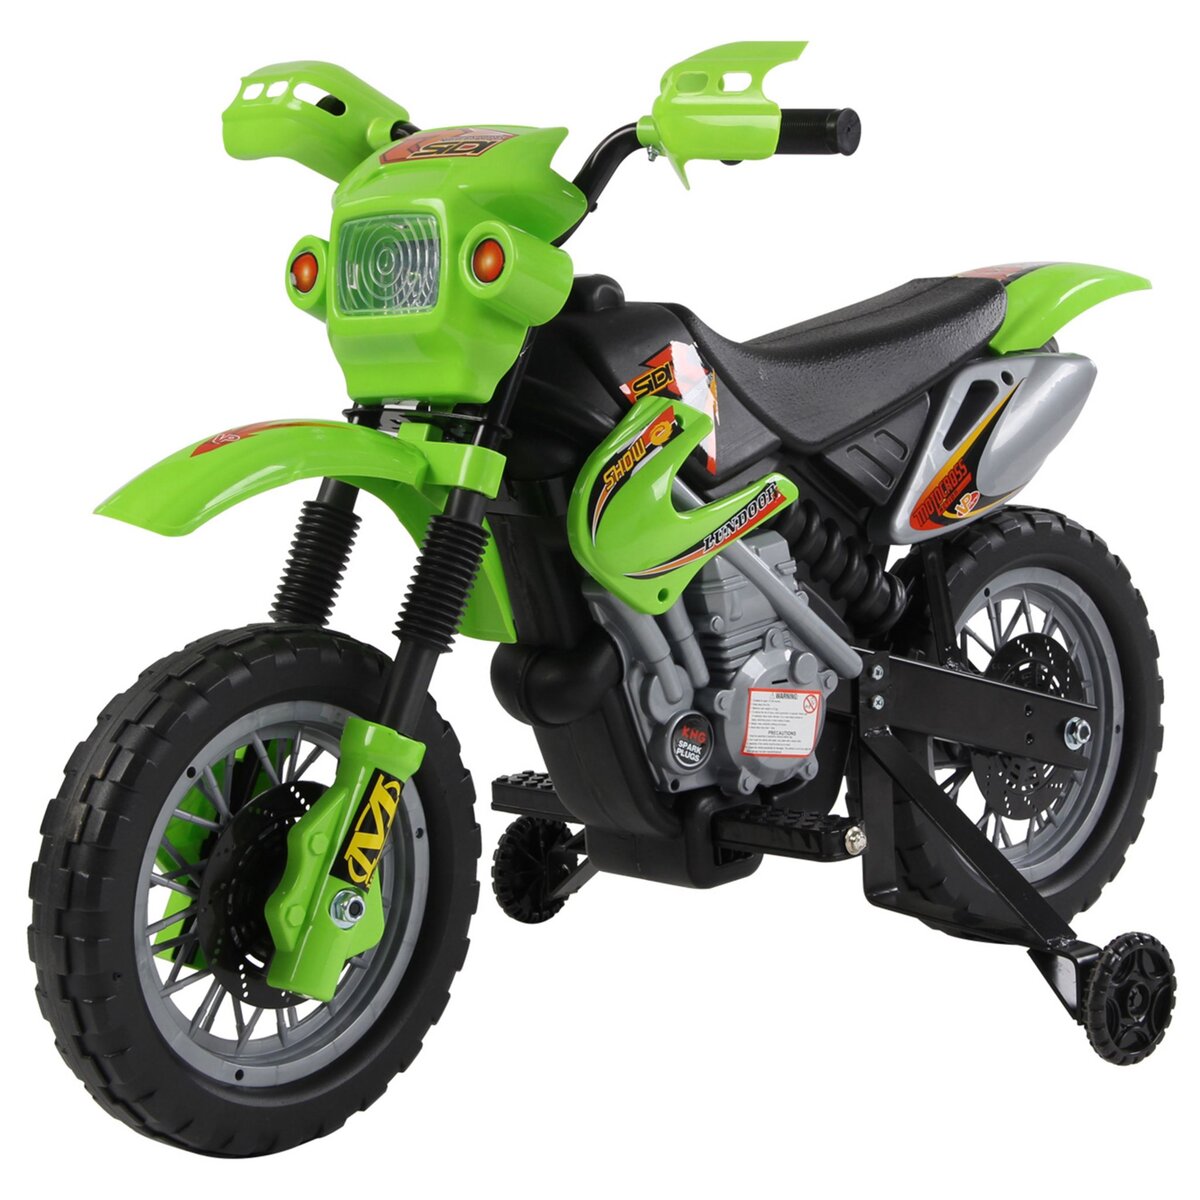 HOMCOM Moto Cross électrique enfant 3 à 6 ans 6 V phares klaxon musiques  102 x 53 x 66 cm vert et noir pas cher 